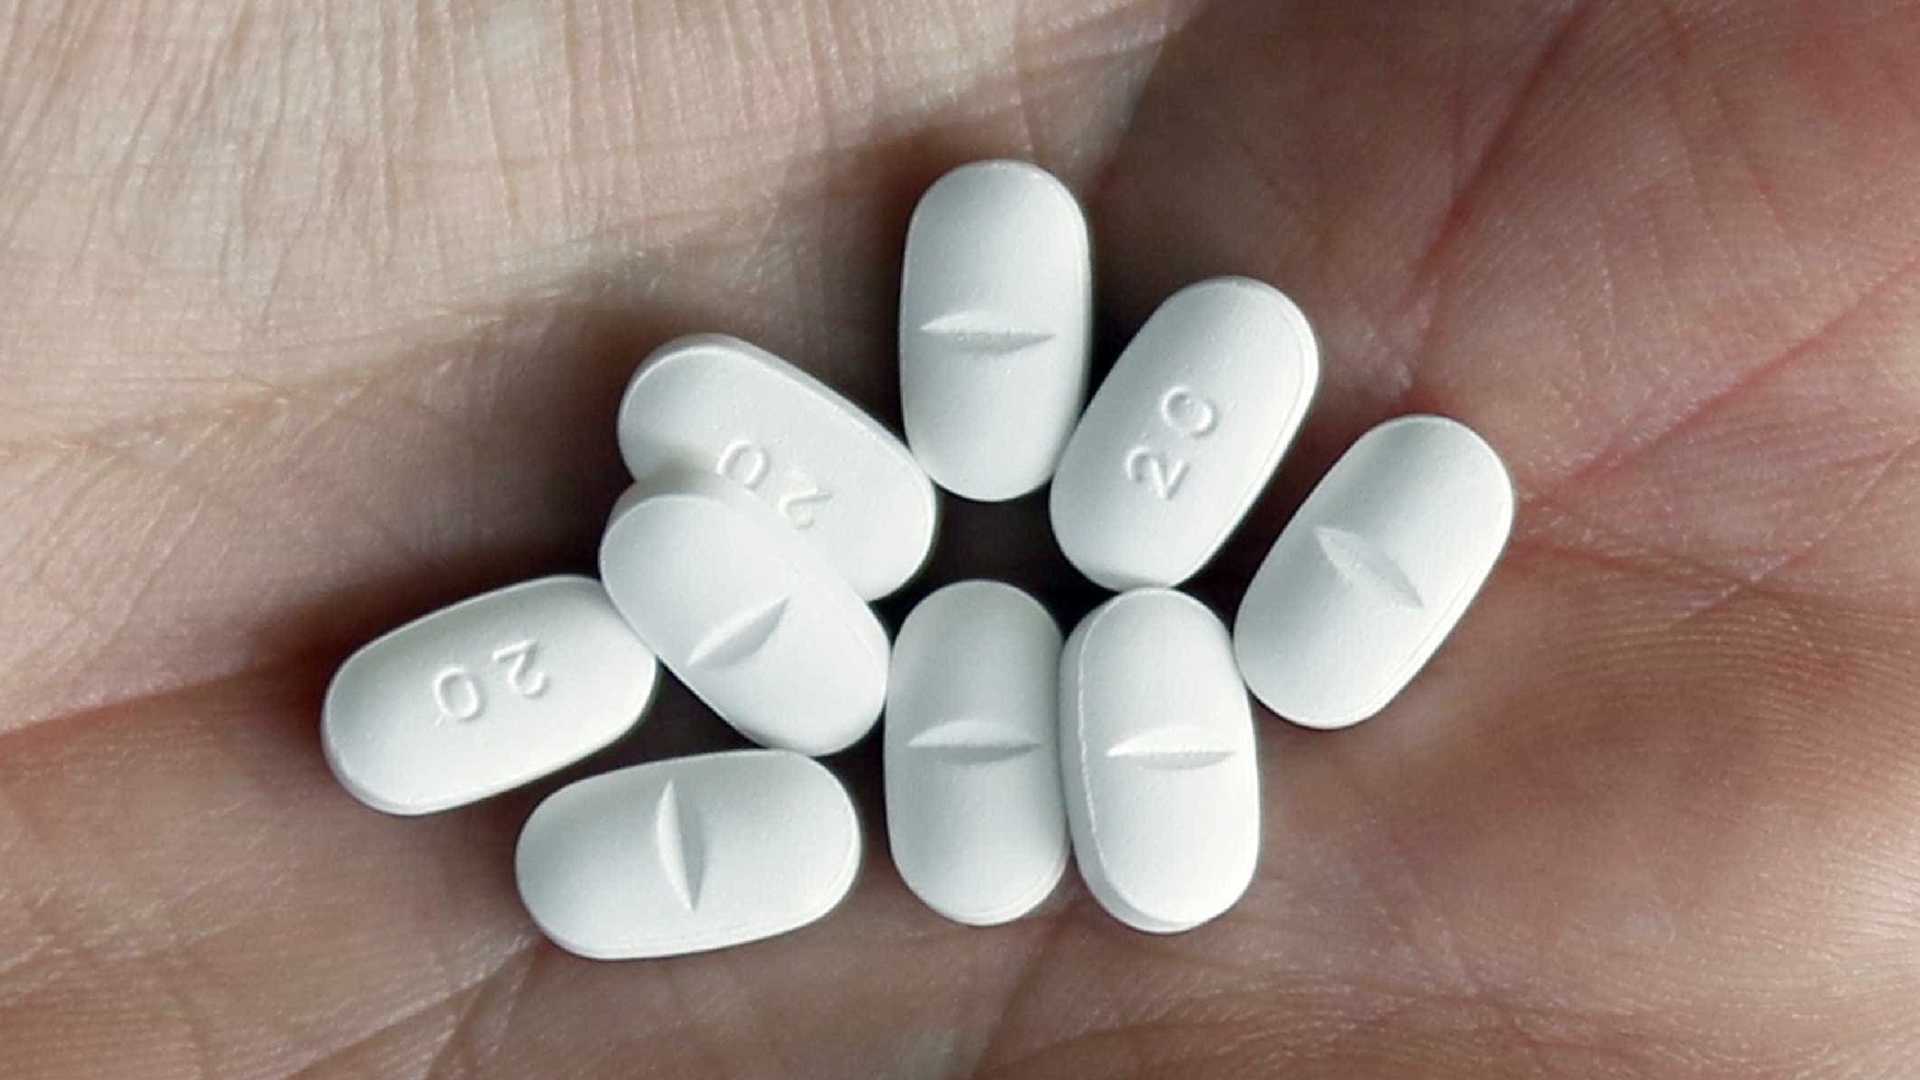 Ibuprofeno em excesso pode levar à impotência e prejudicar coração, diz estudo